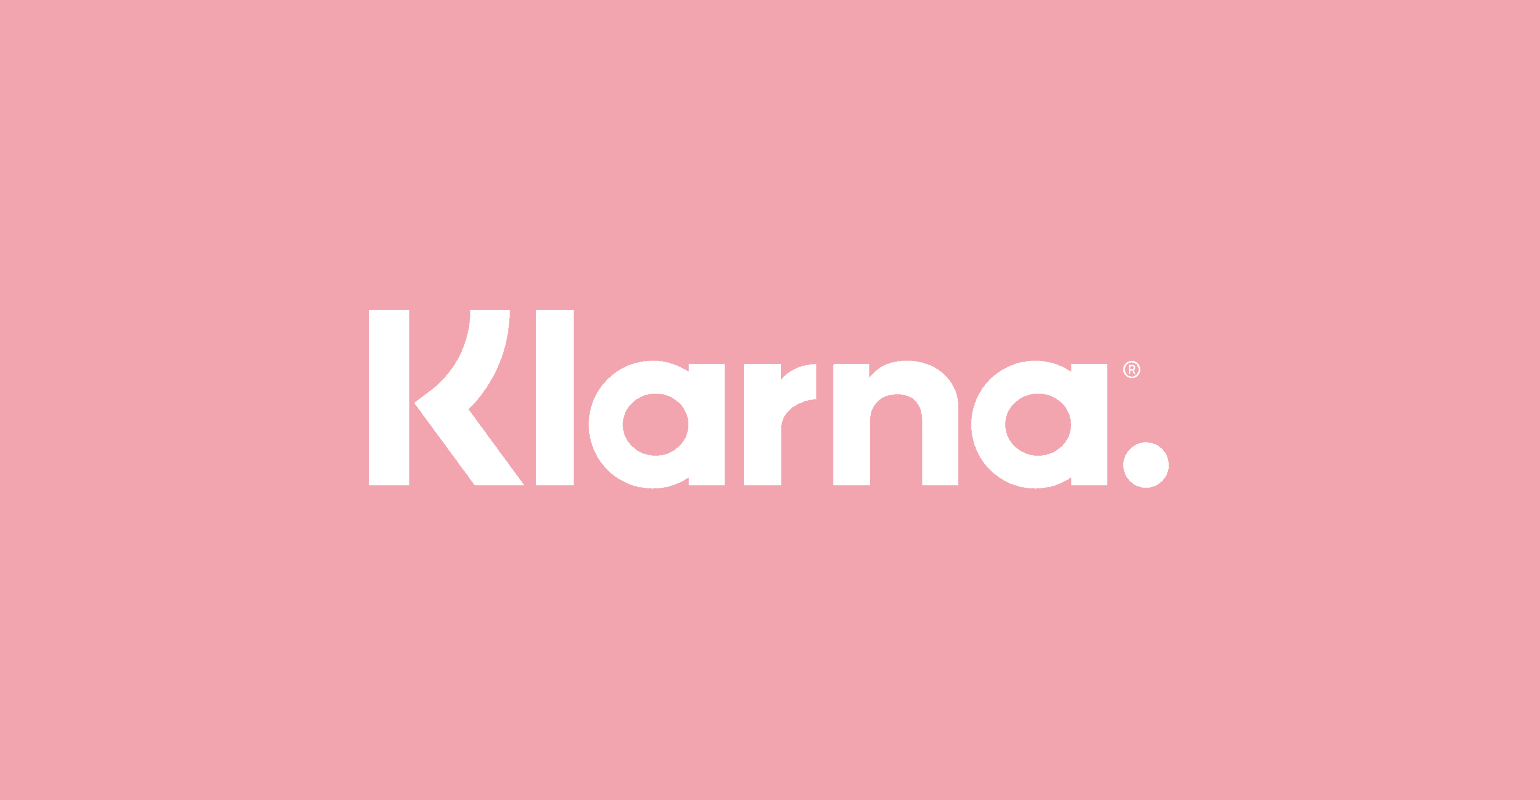 KLARNA